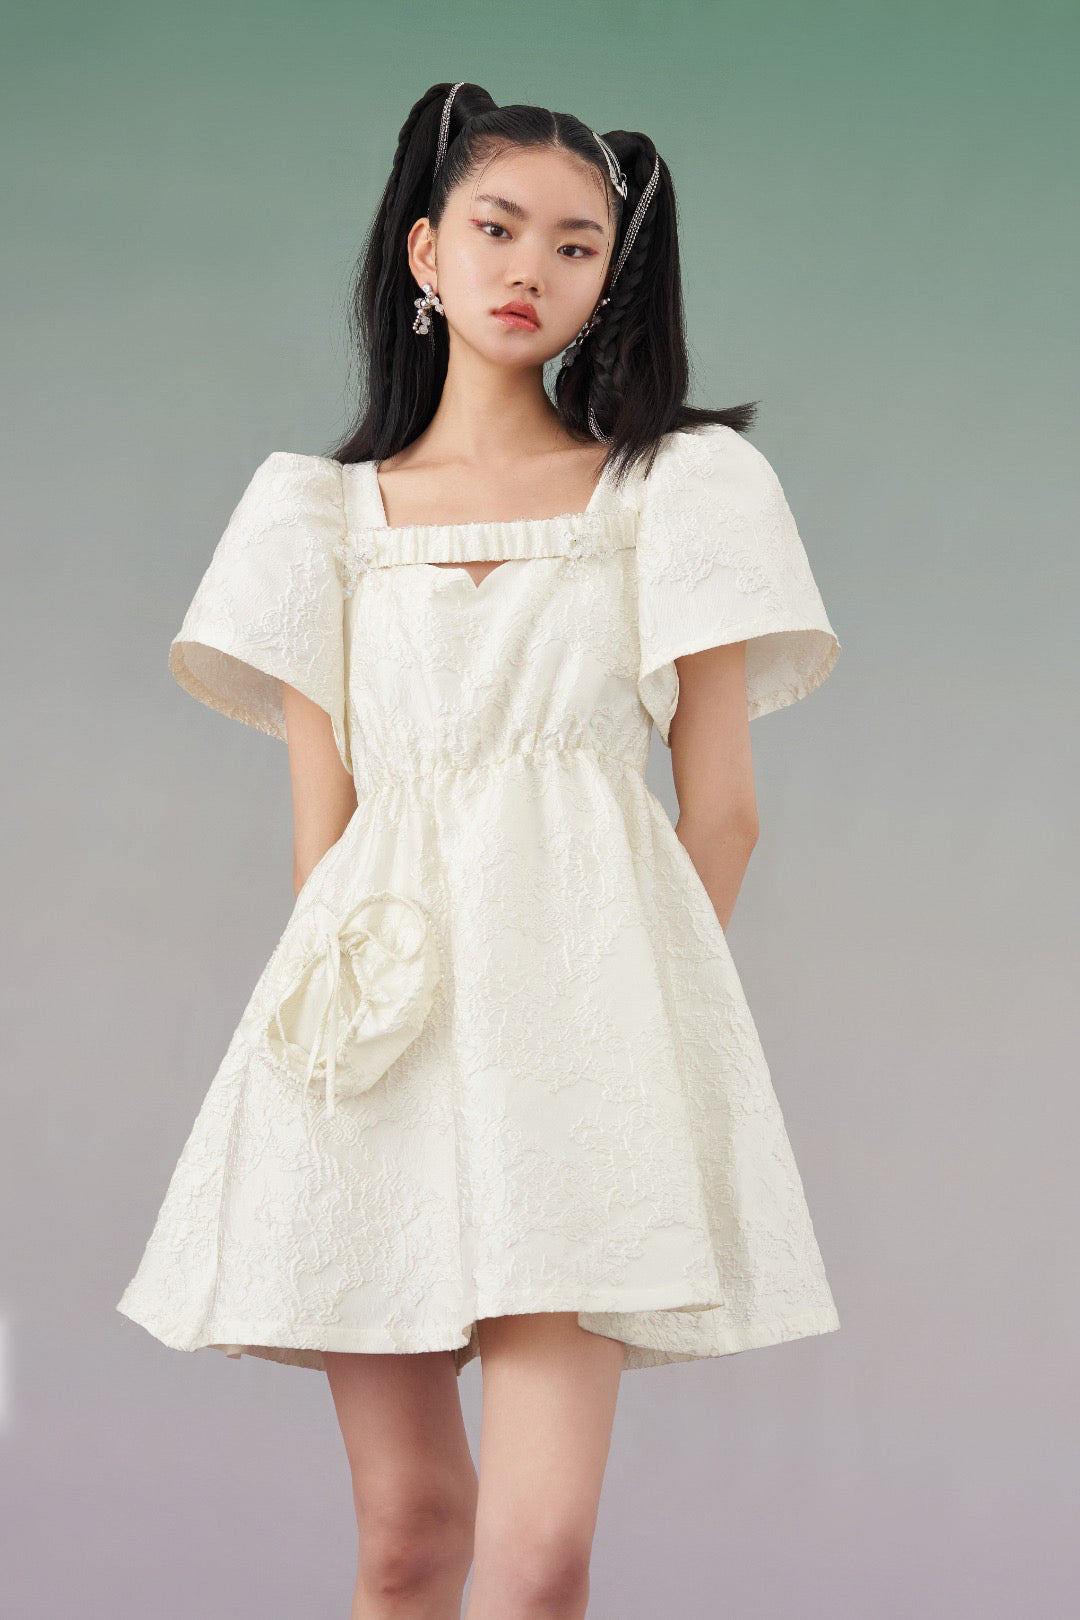 Mukzin | Jacquard Cut-Out White Dress - Seeking Fairyland